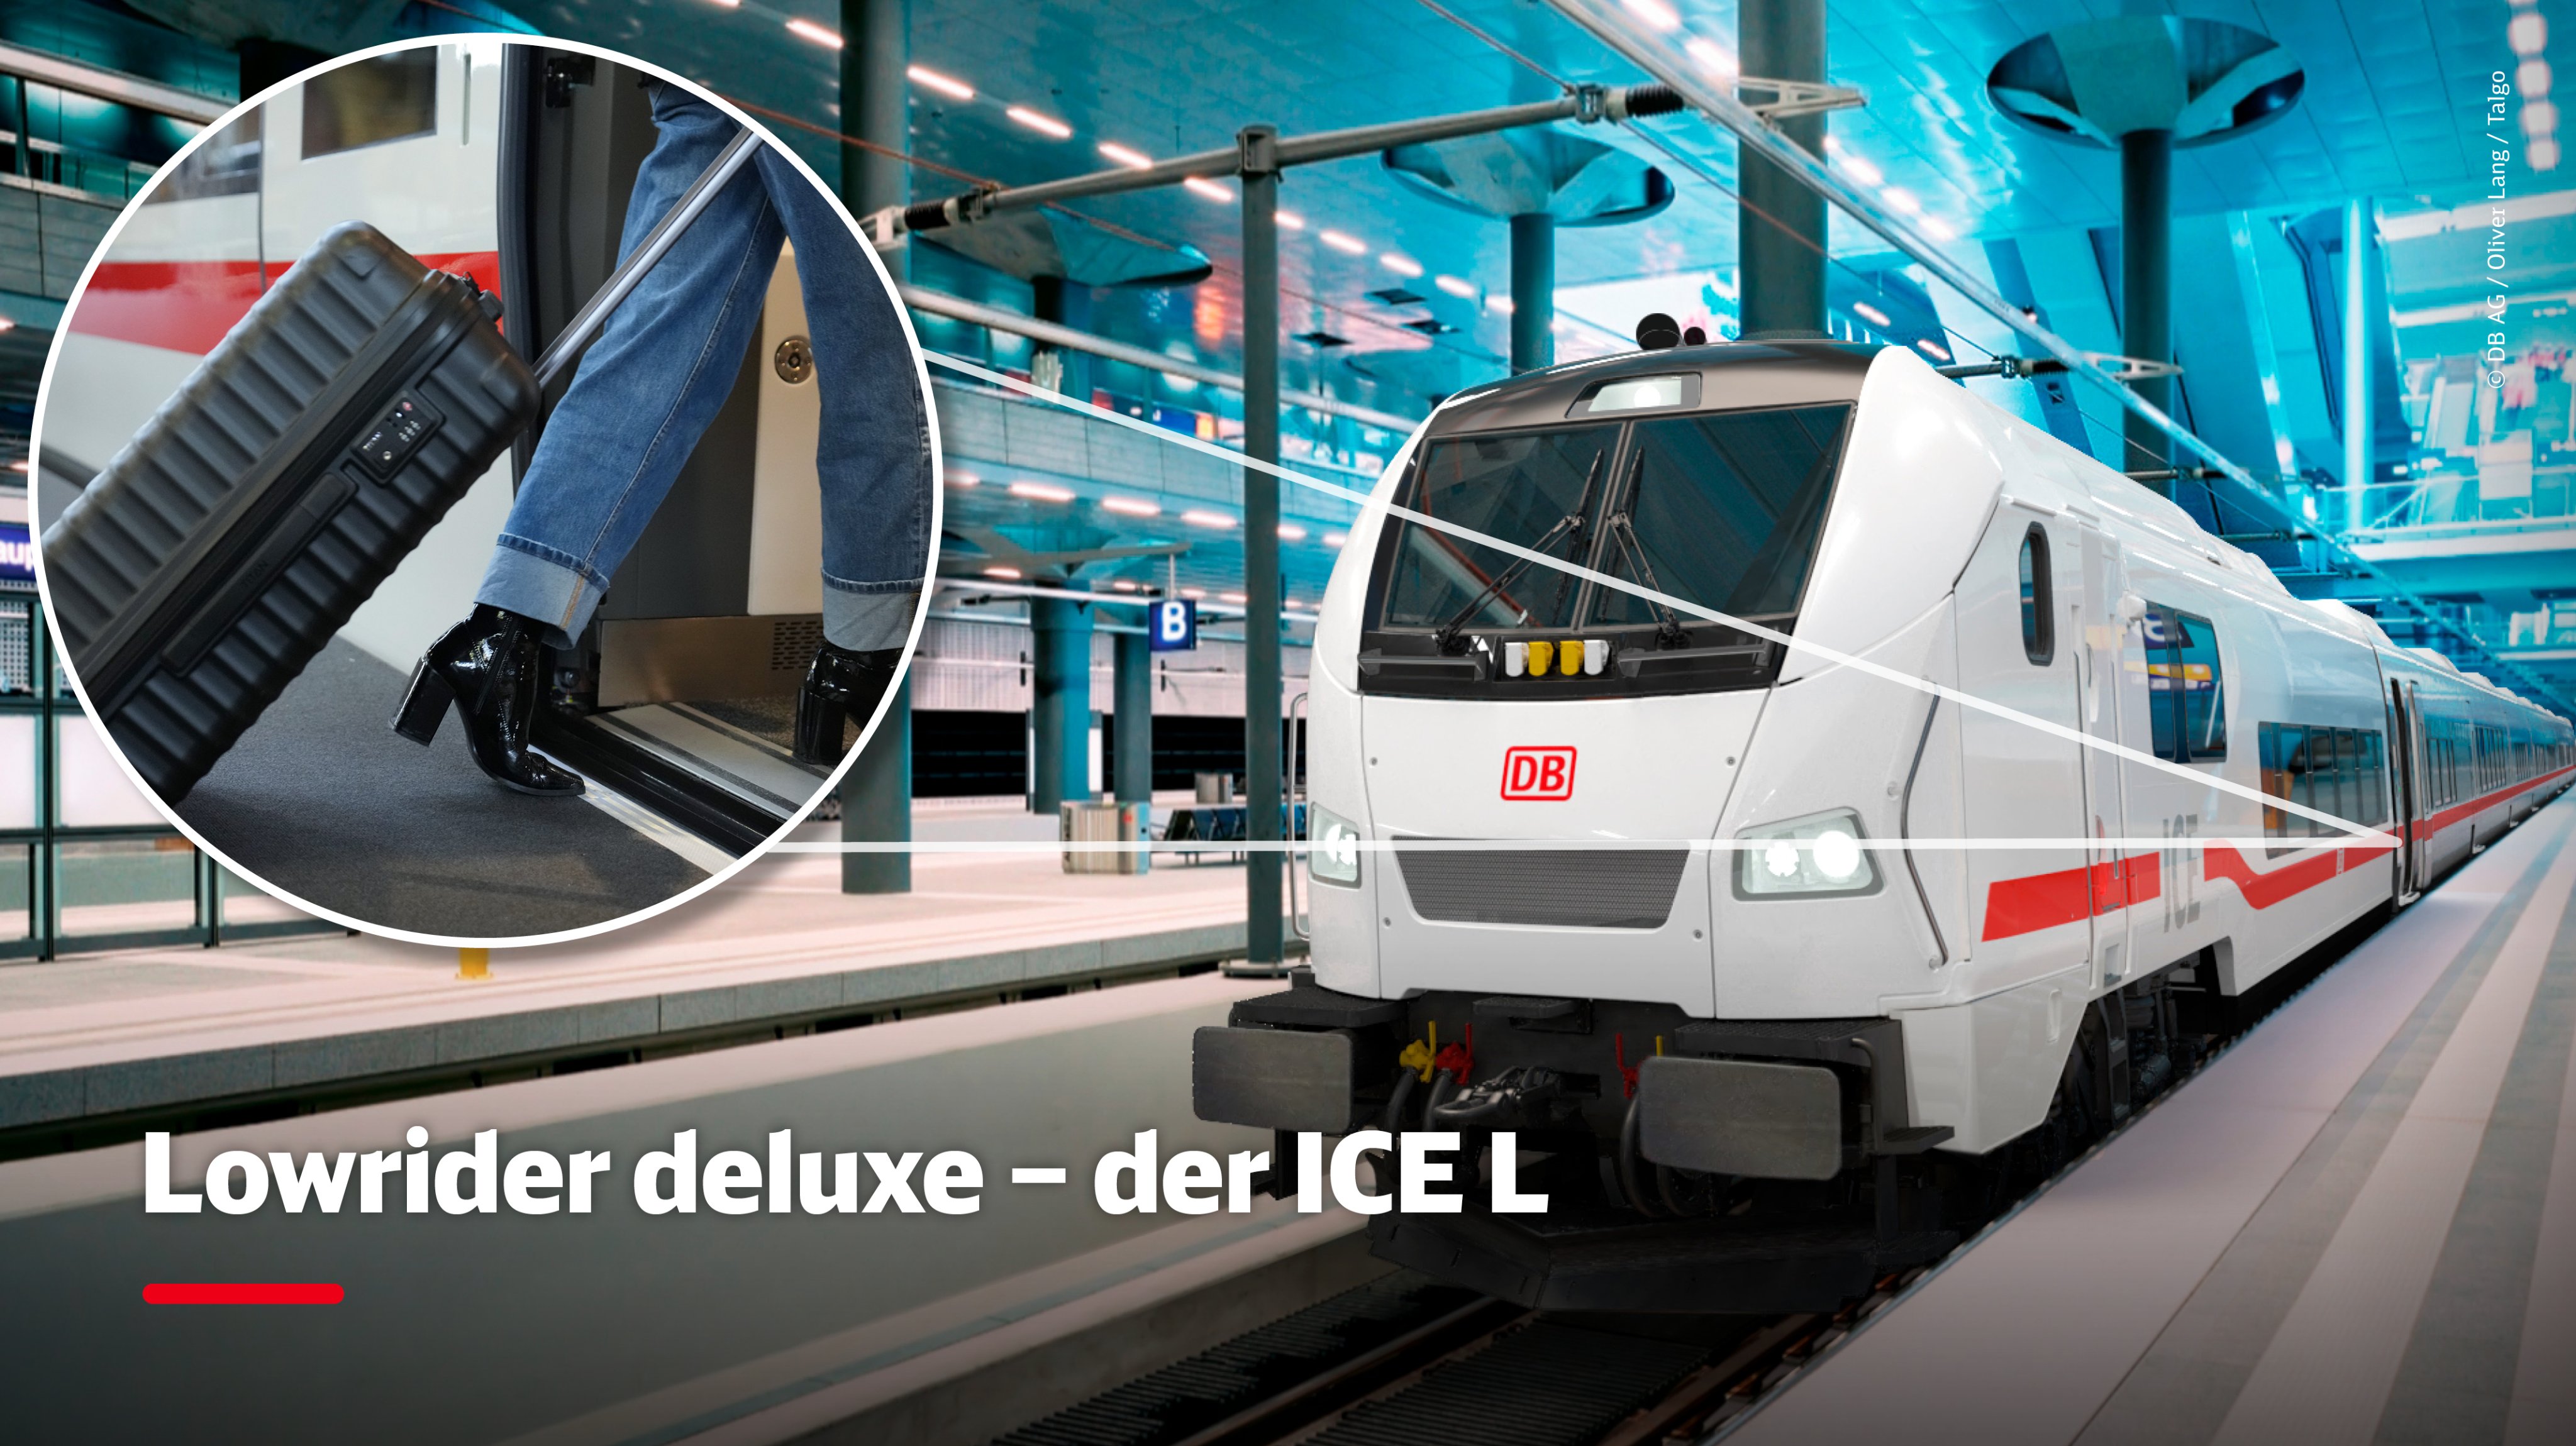 Deutsche Bahn AG on X: Heute stapeln wir mal tief: Bald könnt Ihr noch  leichter einsteigen - im #ICE L mit stufenlosem Ein- und Ausstieg. Das  schafft mehr Komfort für alle Reisenden.